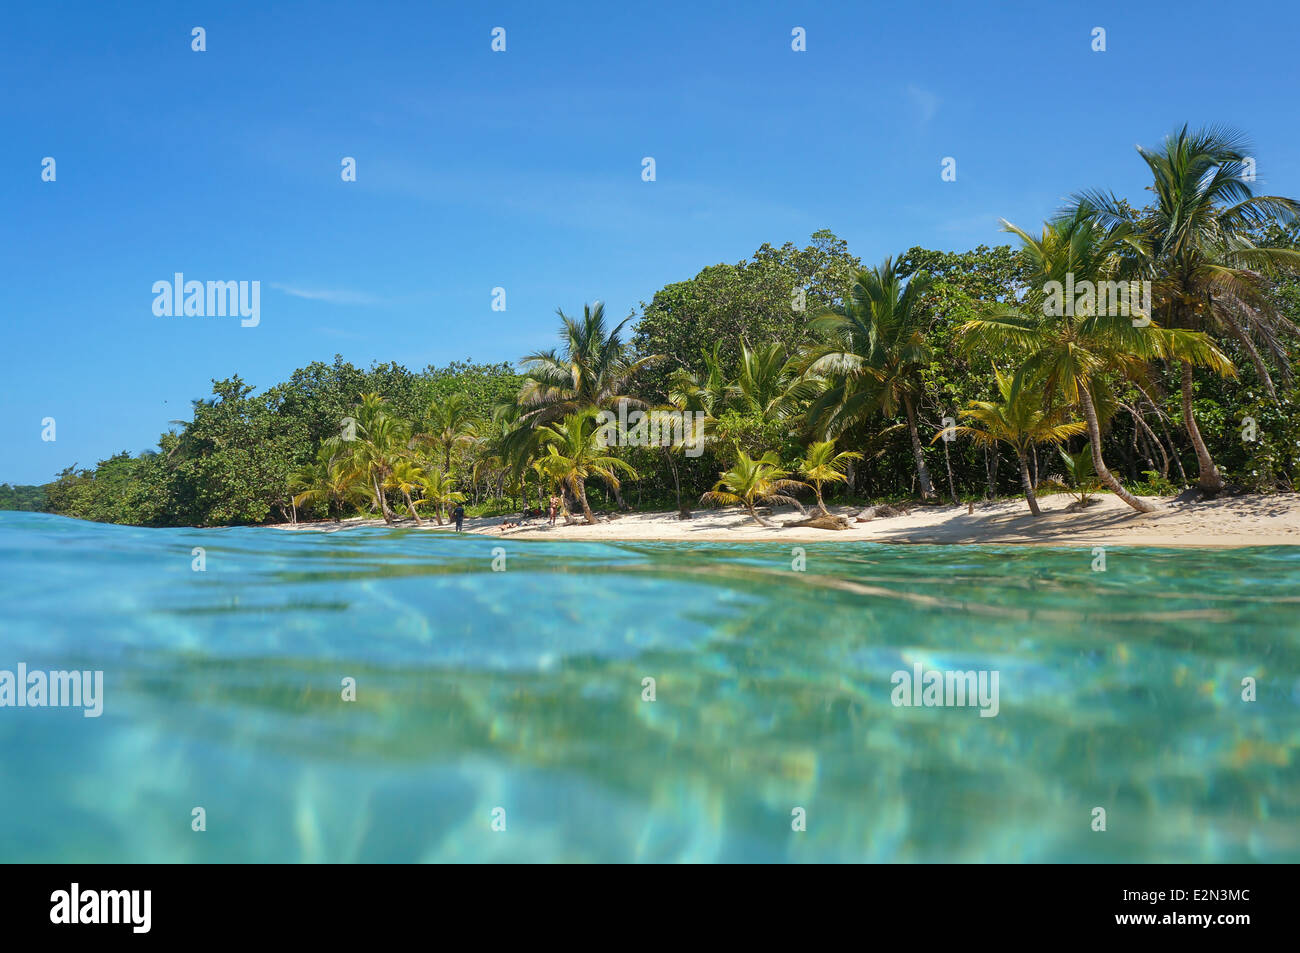 Playa de arena con vegetación tropical visto desde la superficie de agua, mar Caribe, Panamá Foto de stock